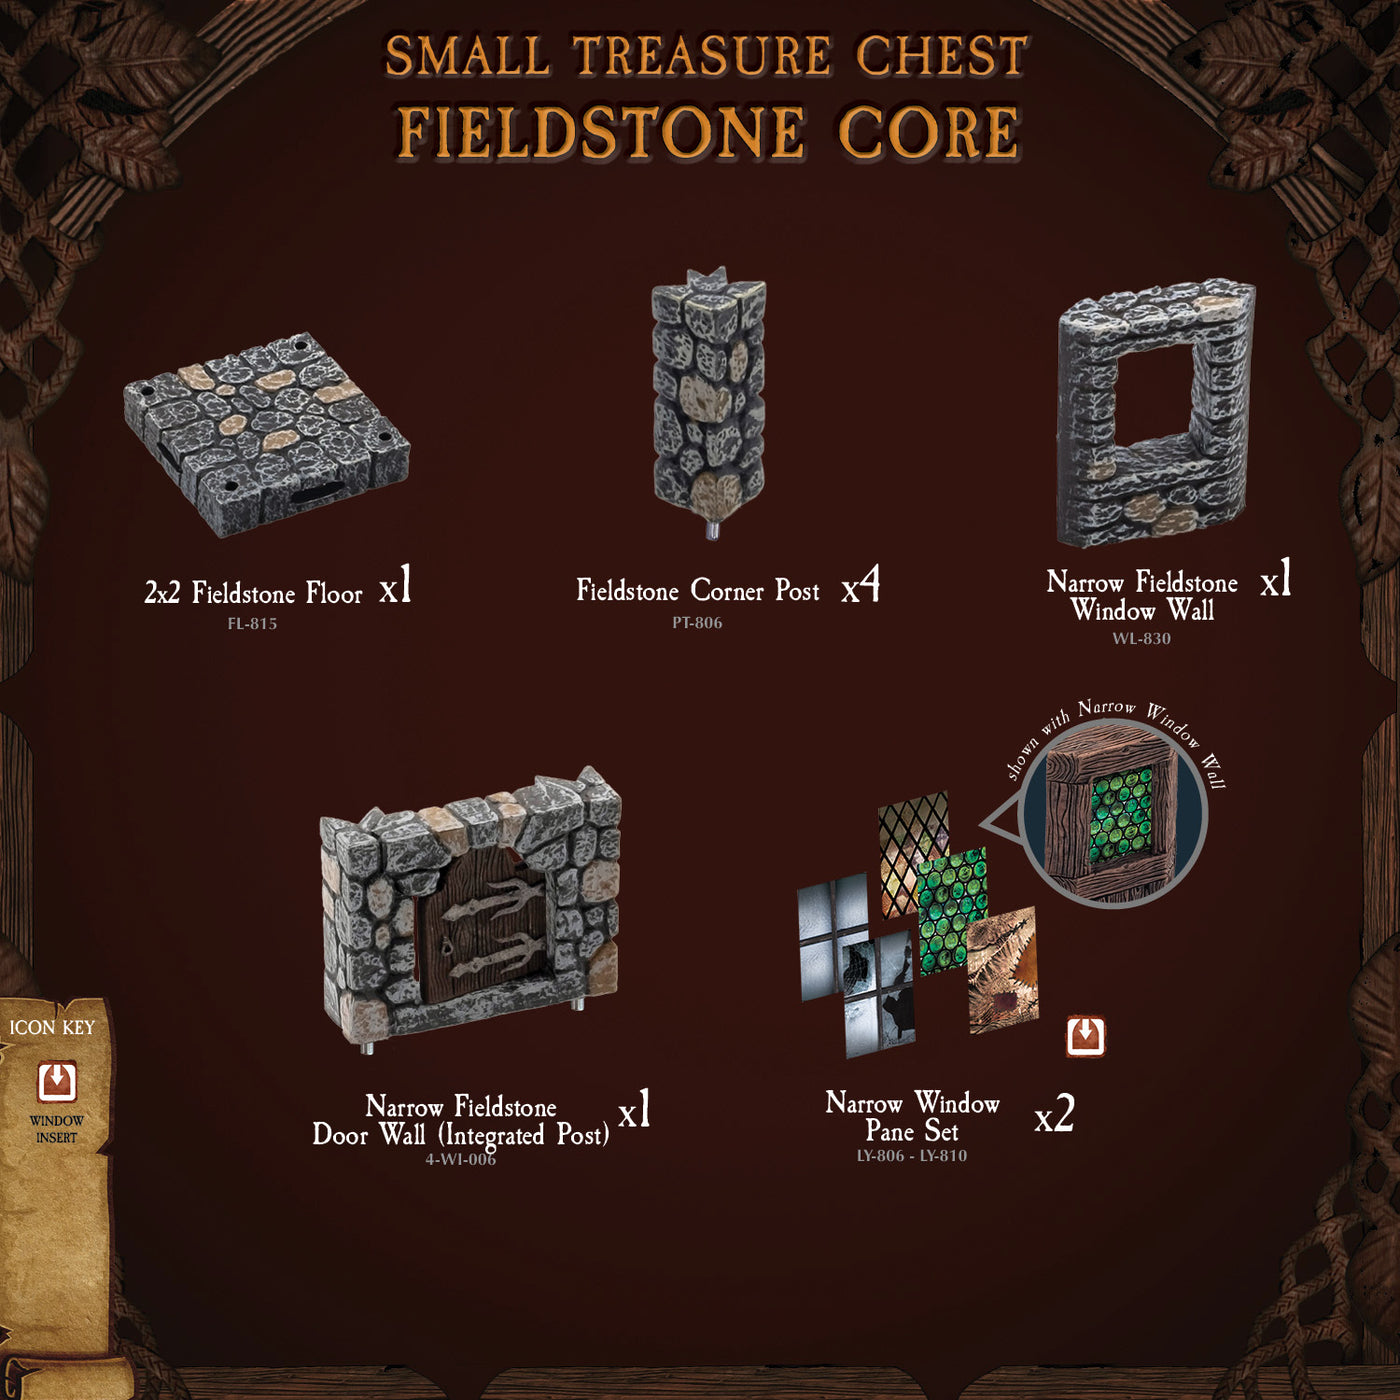 Small Treasure Chest - Fieldstone Core (Painted)